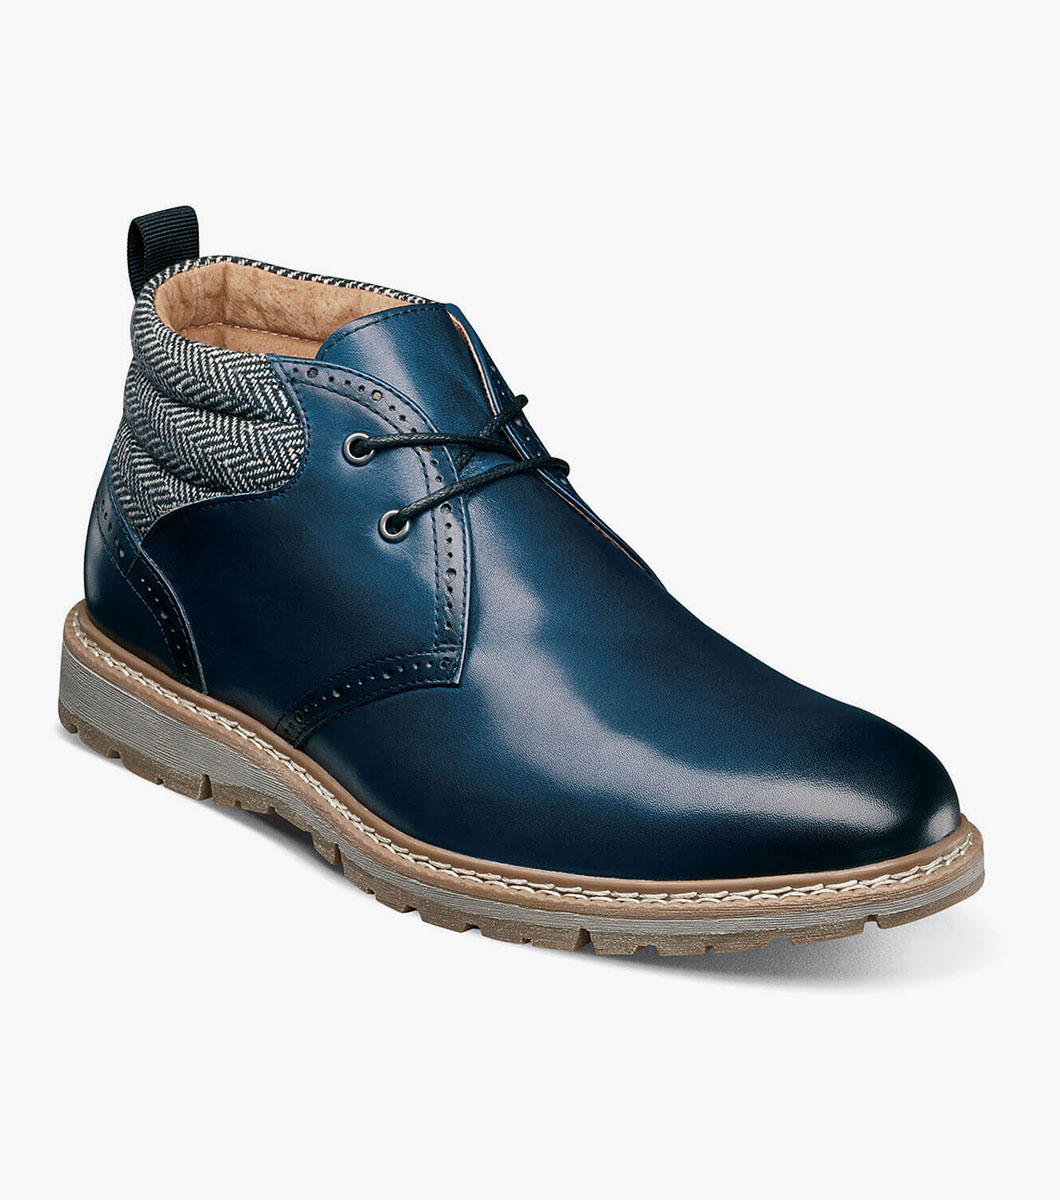 Men's Casual Shoes | Indigo Plain Toe Chukka Boot | Stacy Adams Grantley